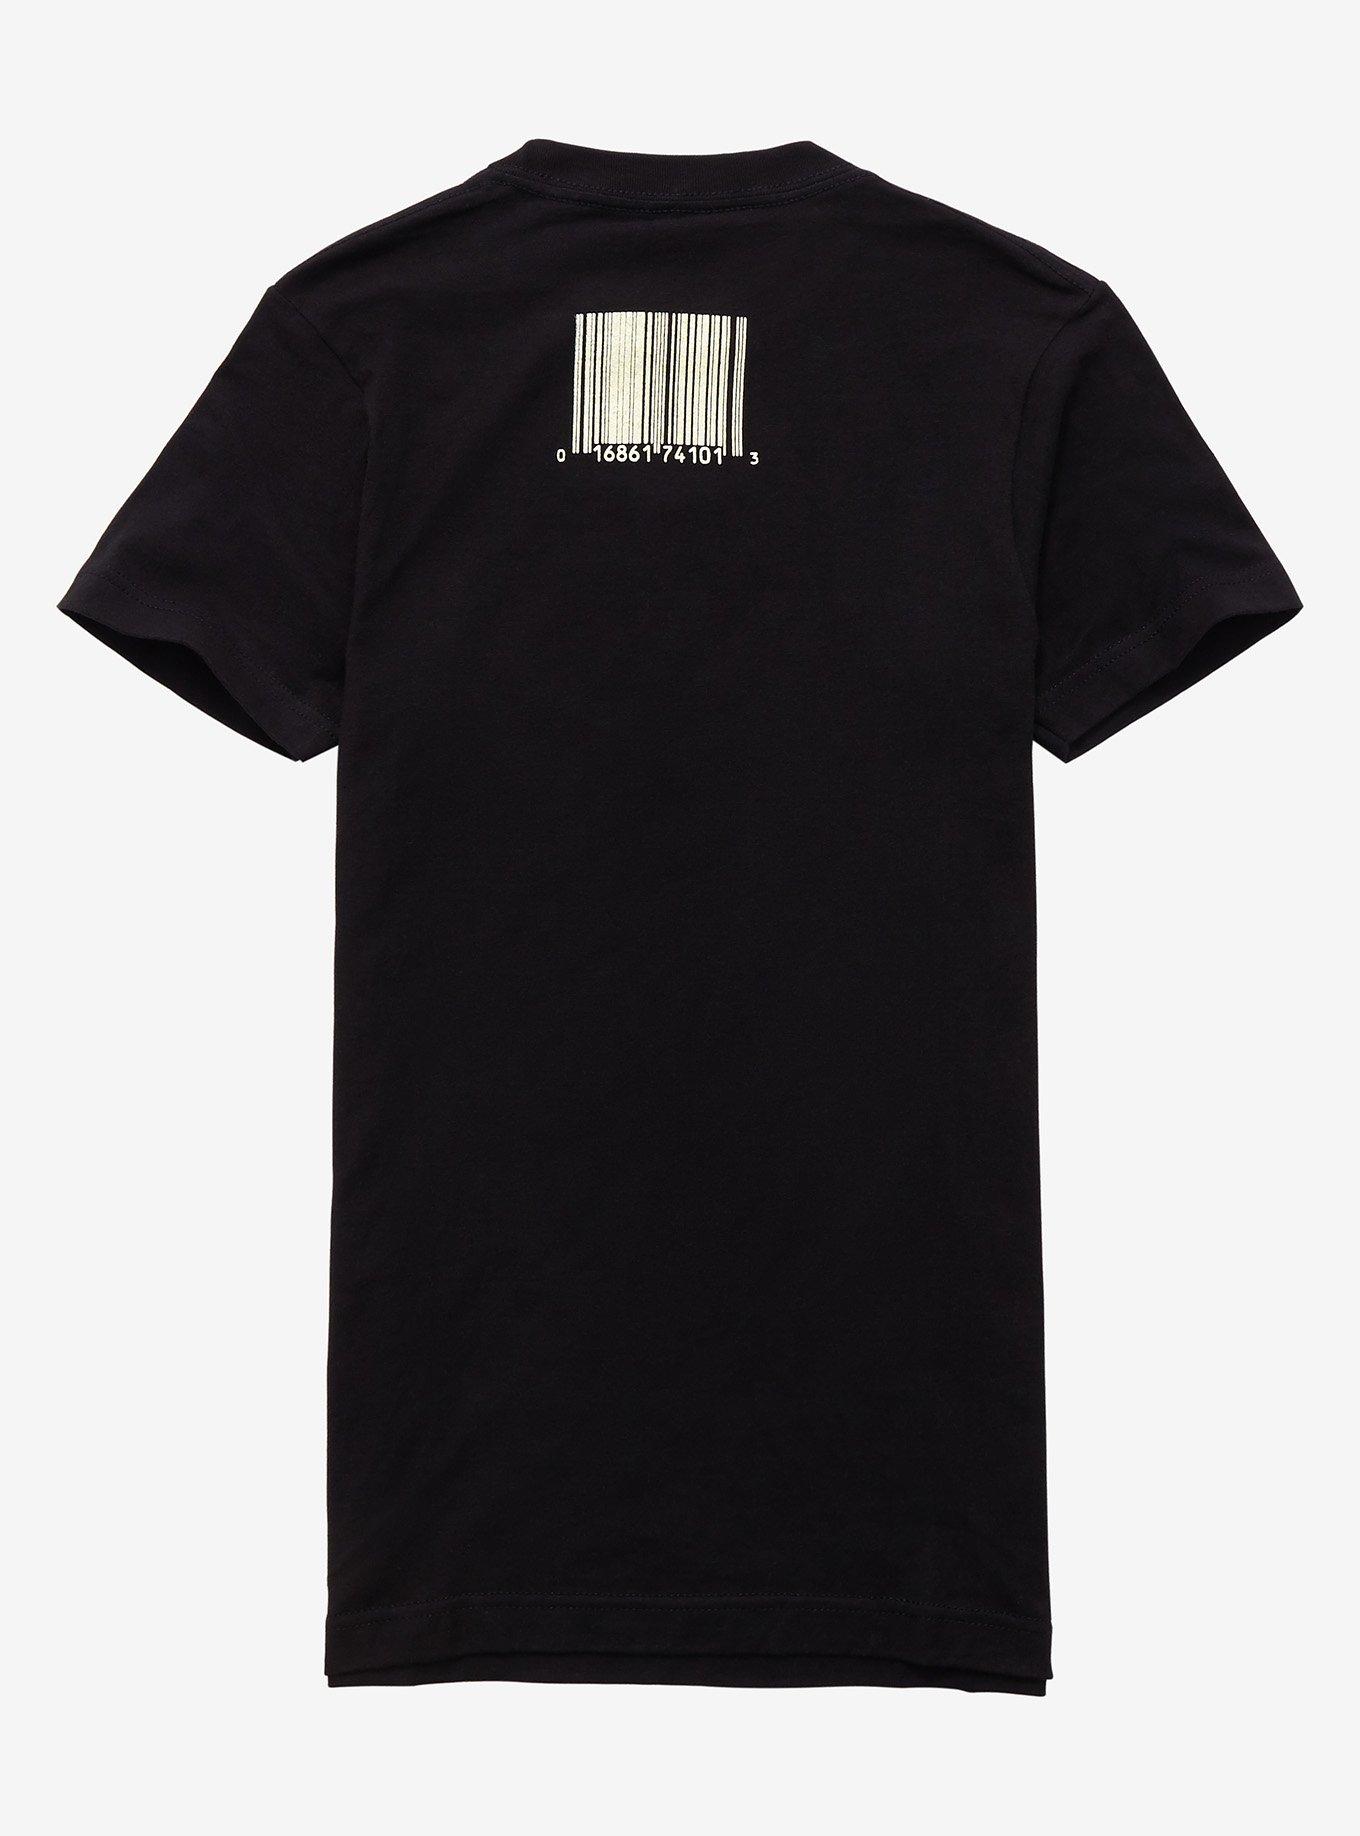 Slipknot Duality Girls T-Shirt, BLACK, alternate